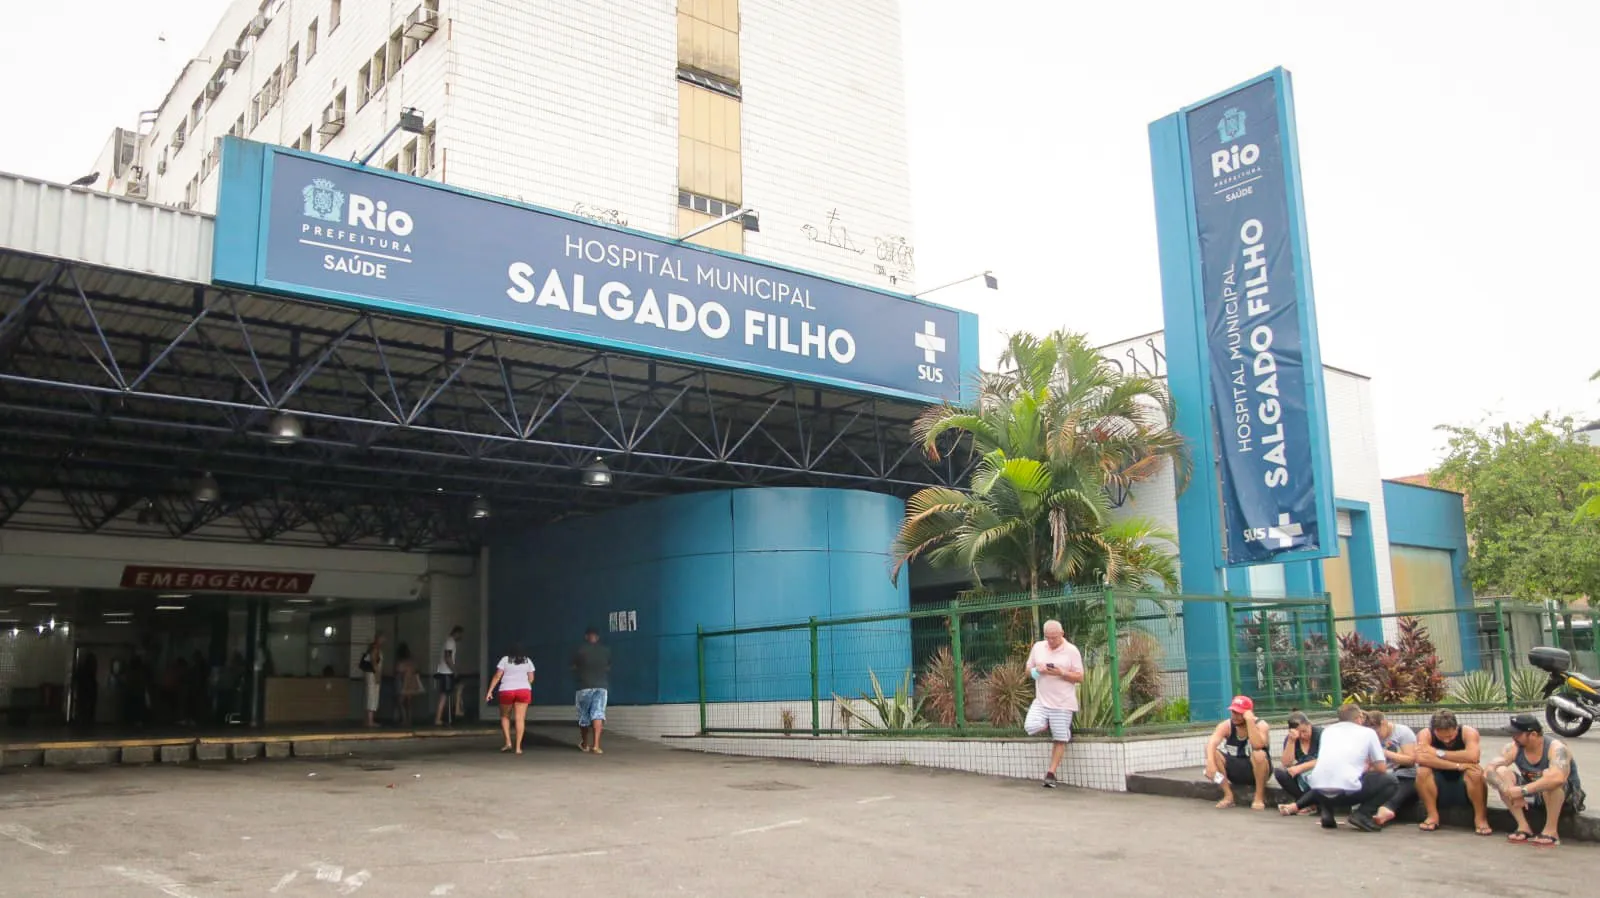 A vítima está internada no Hospital Municipal Salgado Filho, no bairro do Méier, na Zona Norte do Rio